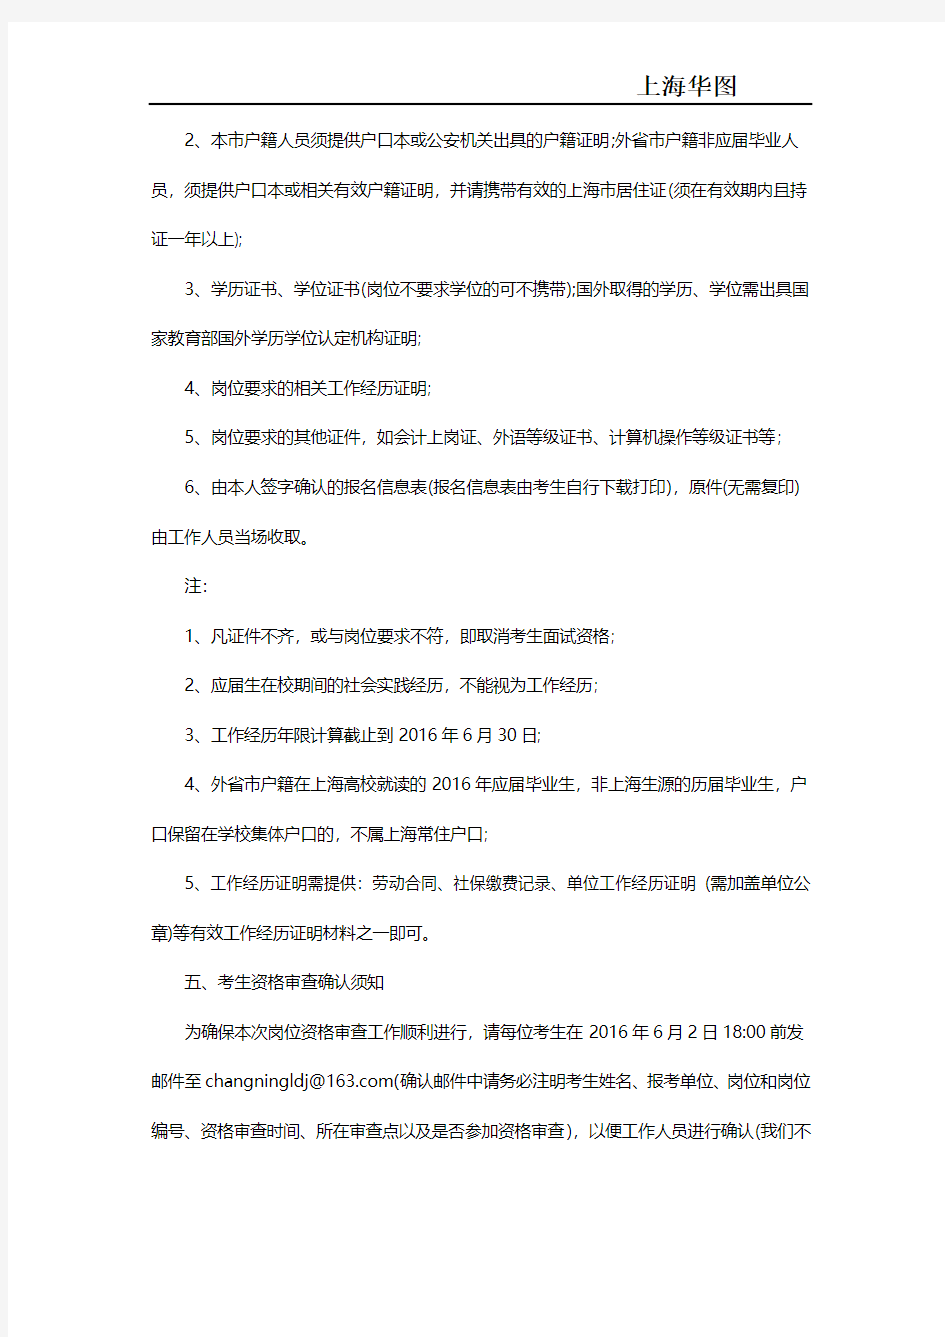 【面试】2016年上海长宁区事业单位面试资格审核通知